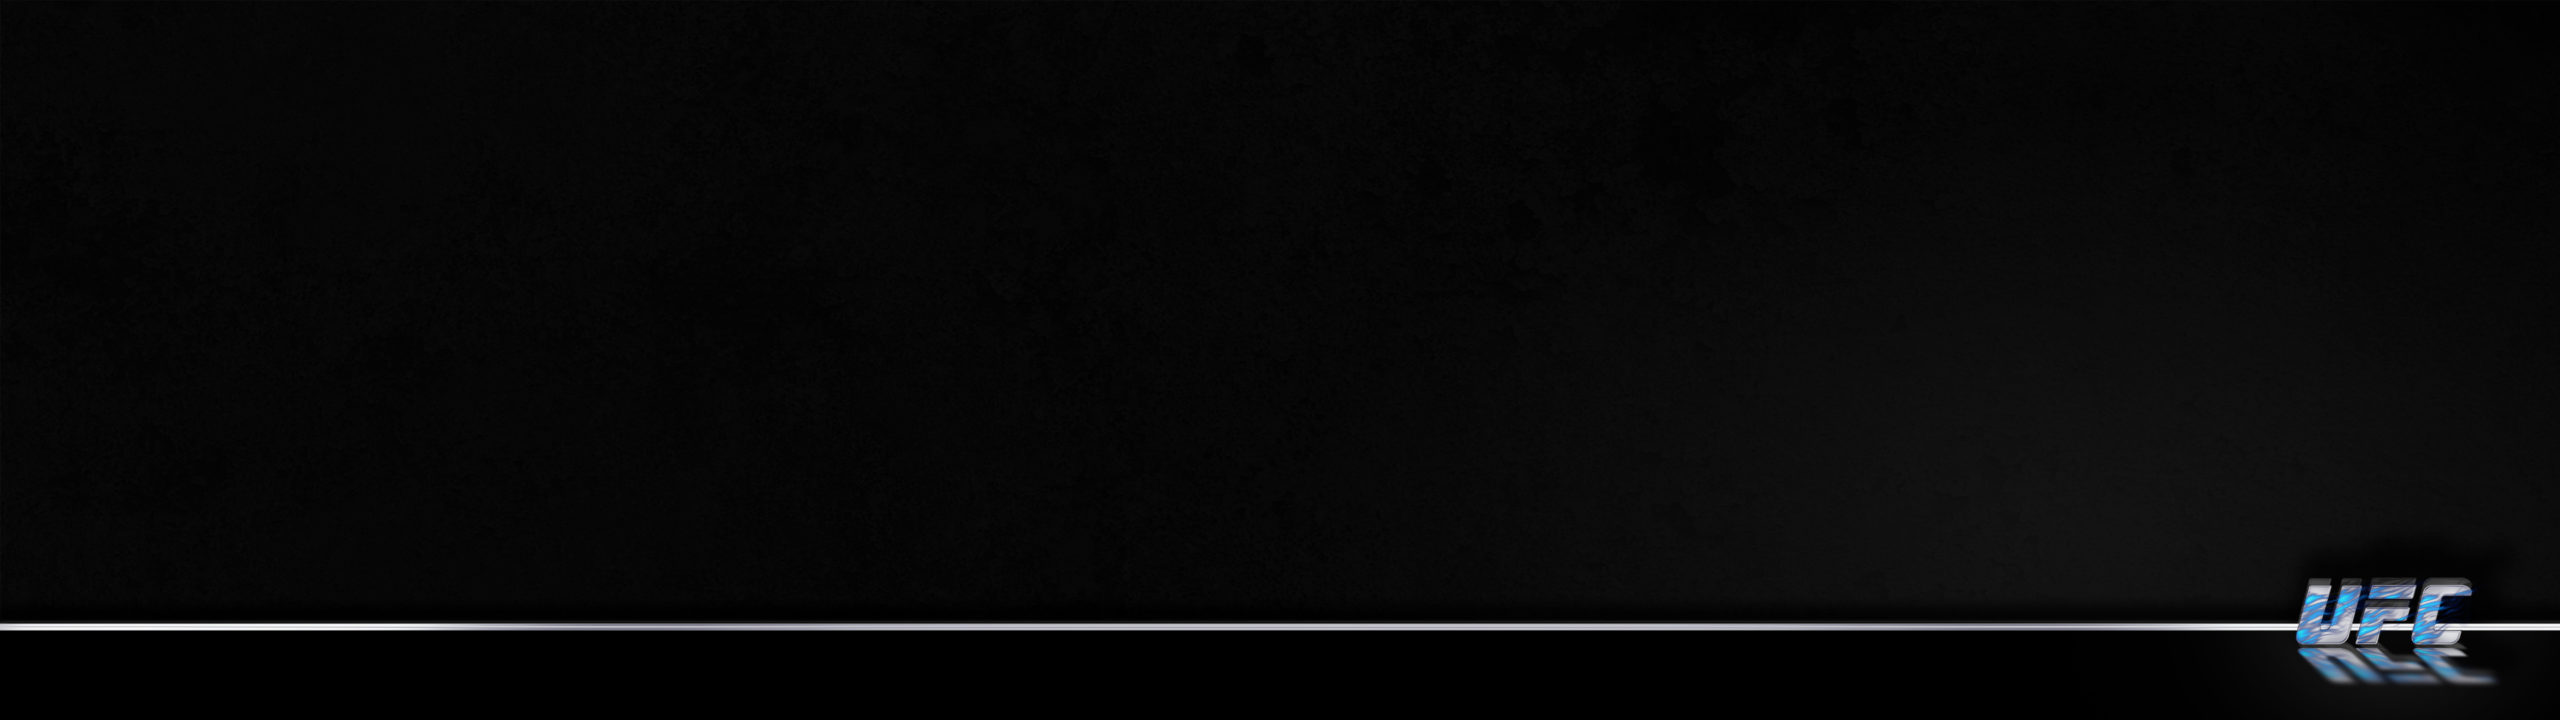 Ufc Flames Grunge Black 4 Blue Background 1080×3840